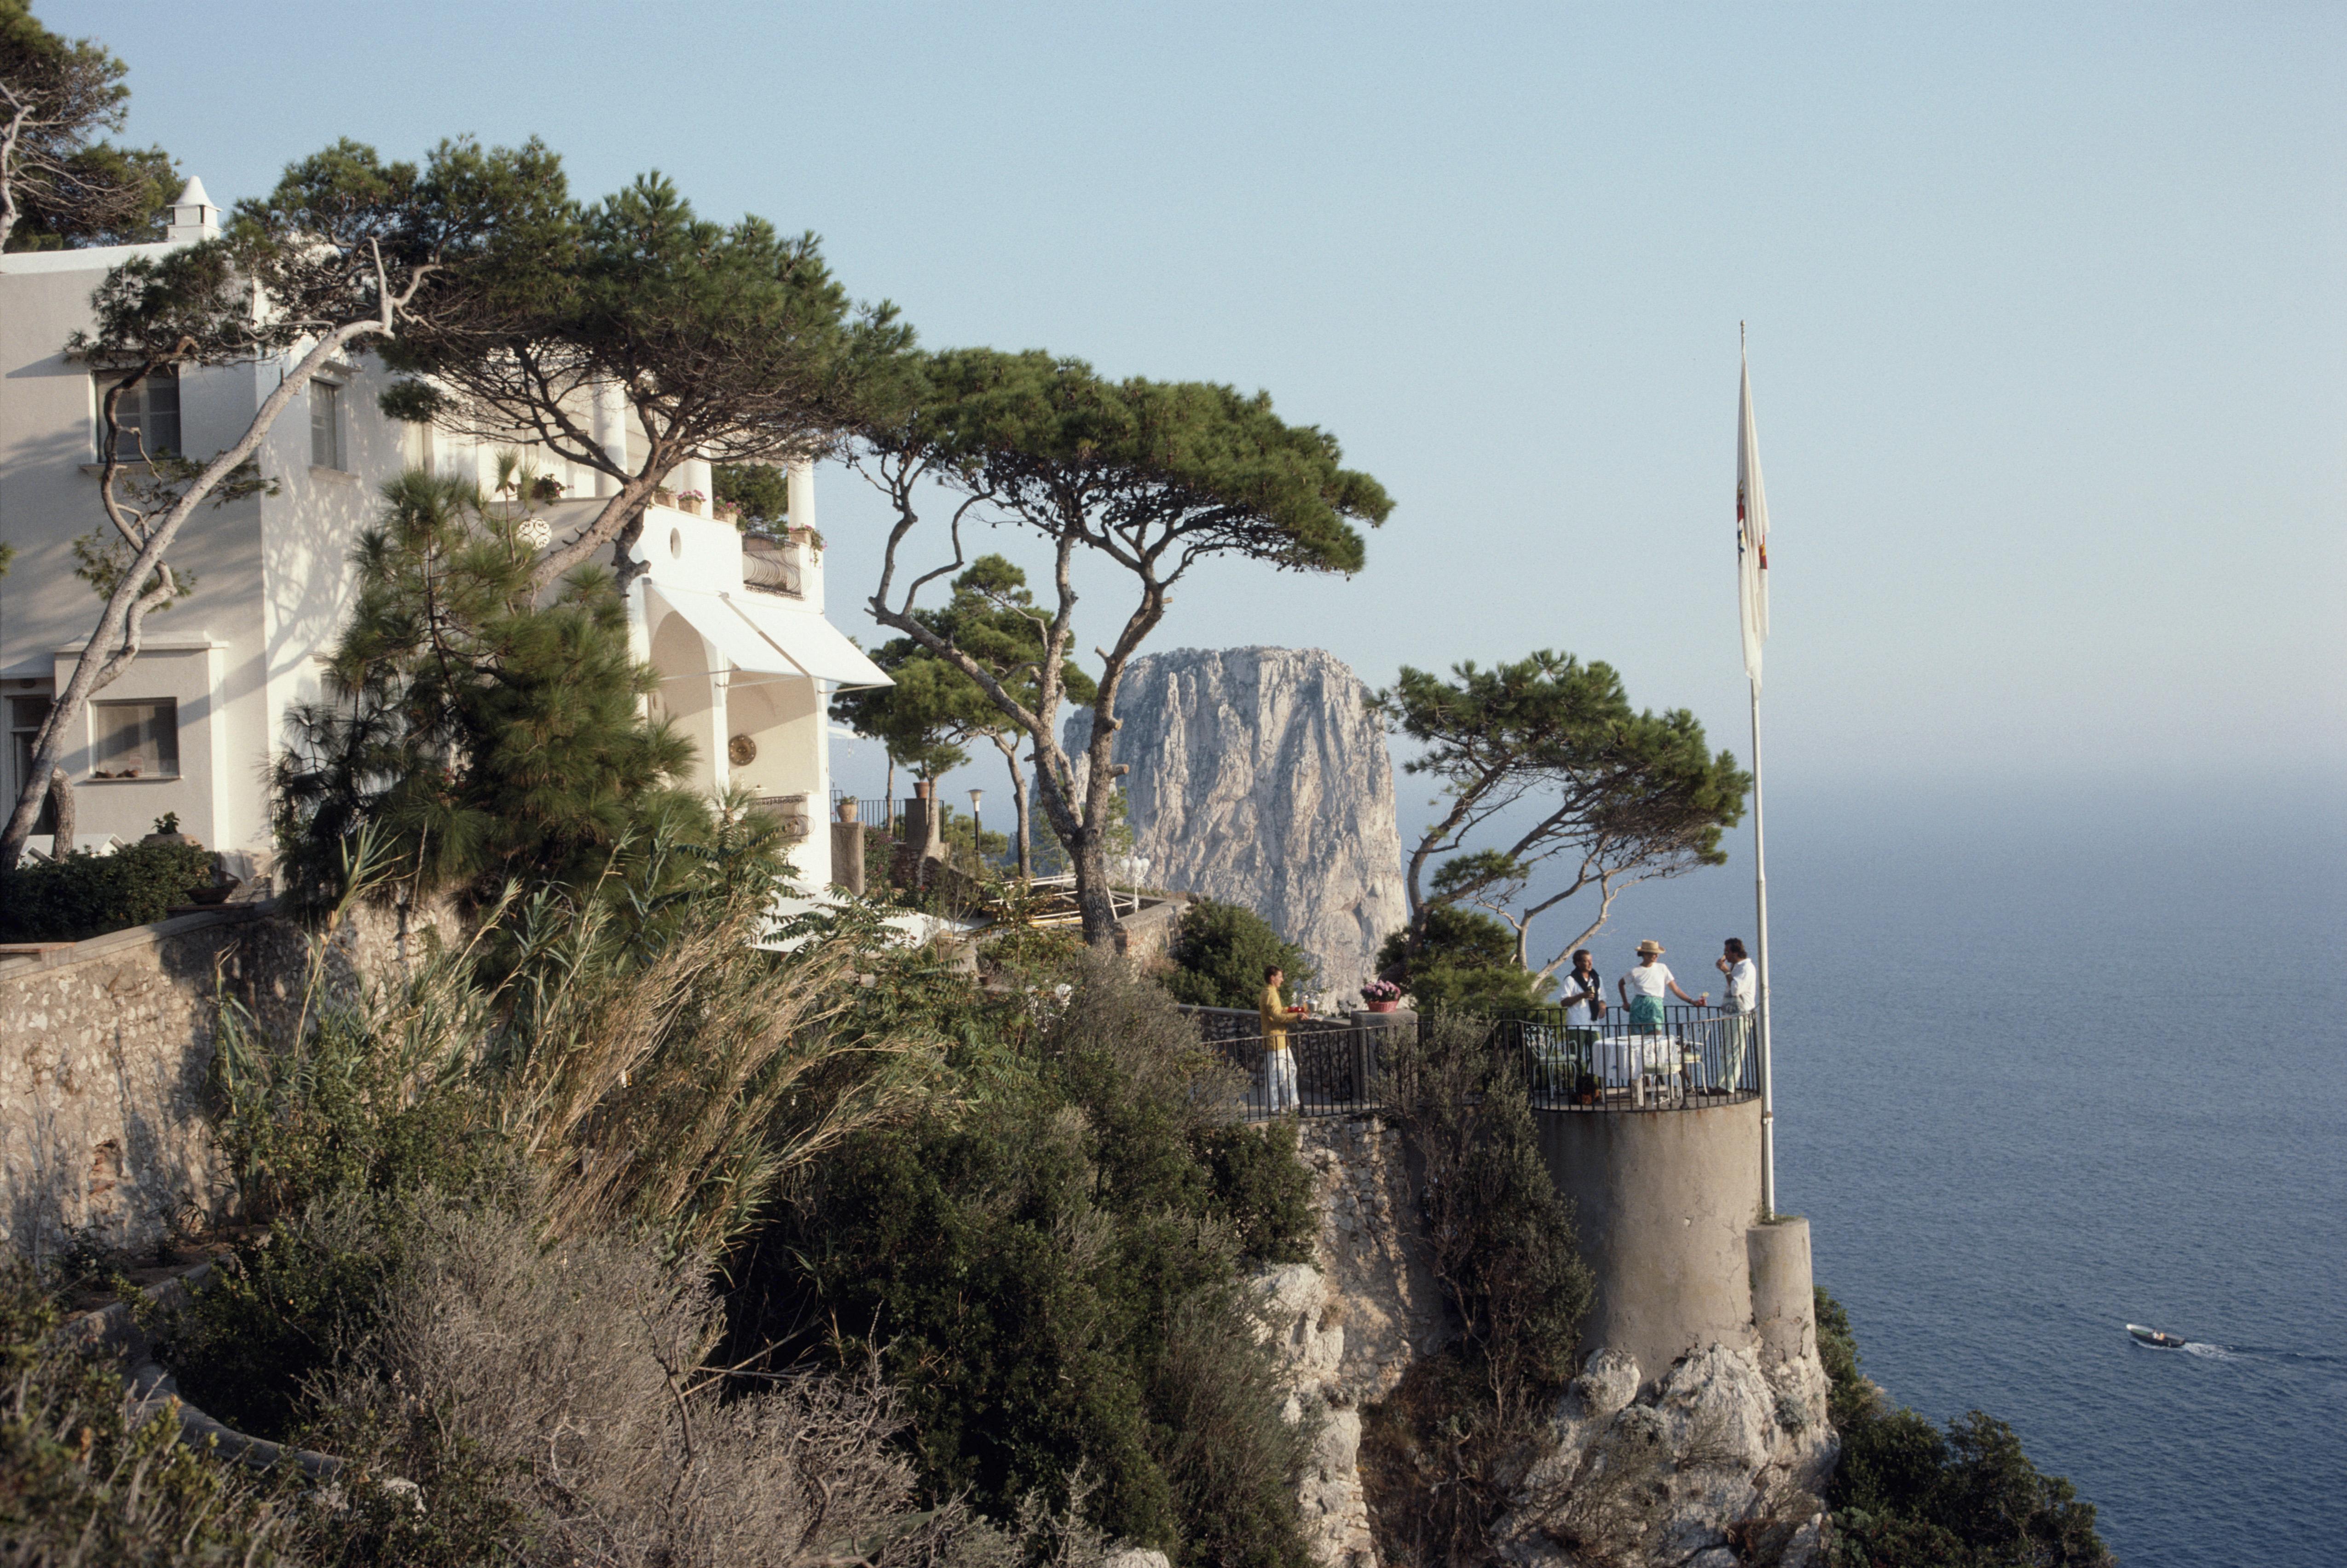 unghia Marina" 1989 Slim Aarons Edition limitée du domaine 

Un groupe de personnes se tient sur une terrasse, à la marina Unghia sur l'île de Capri, en Italie, en septembre 1989. Des arbres parsèment le côté de la marina tandis qu'un mât de drapeau